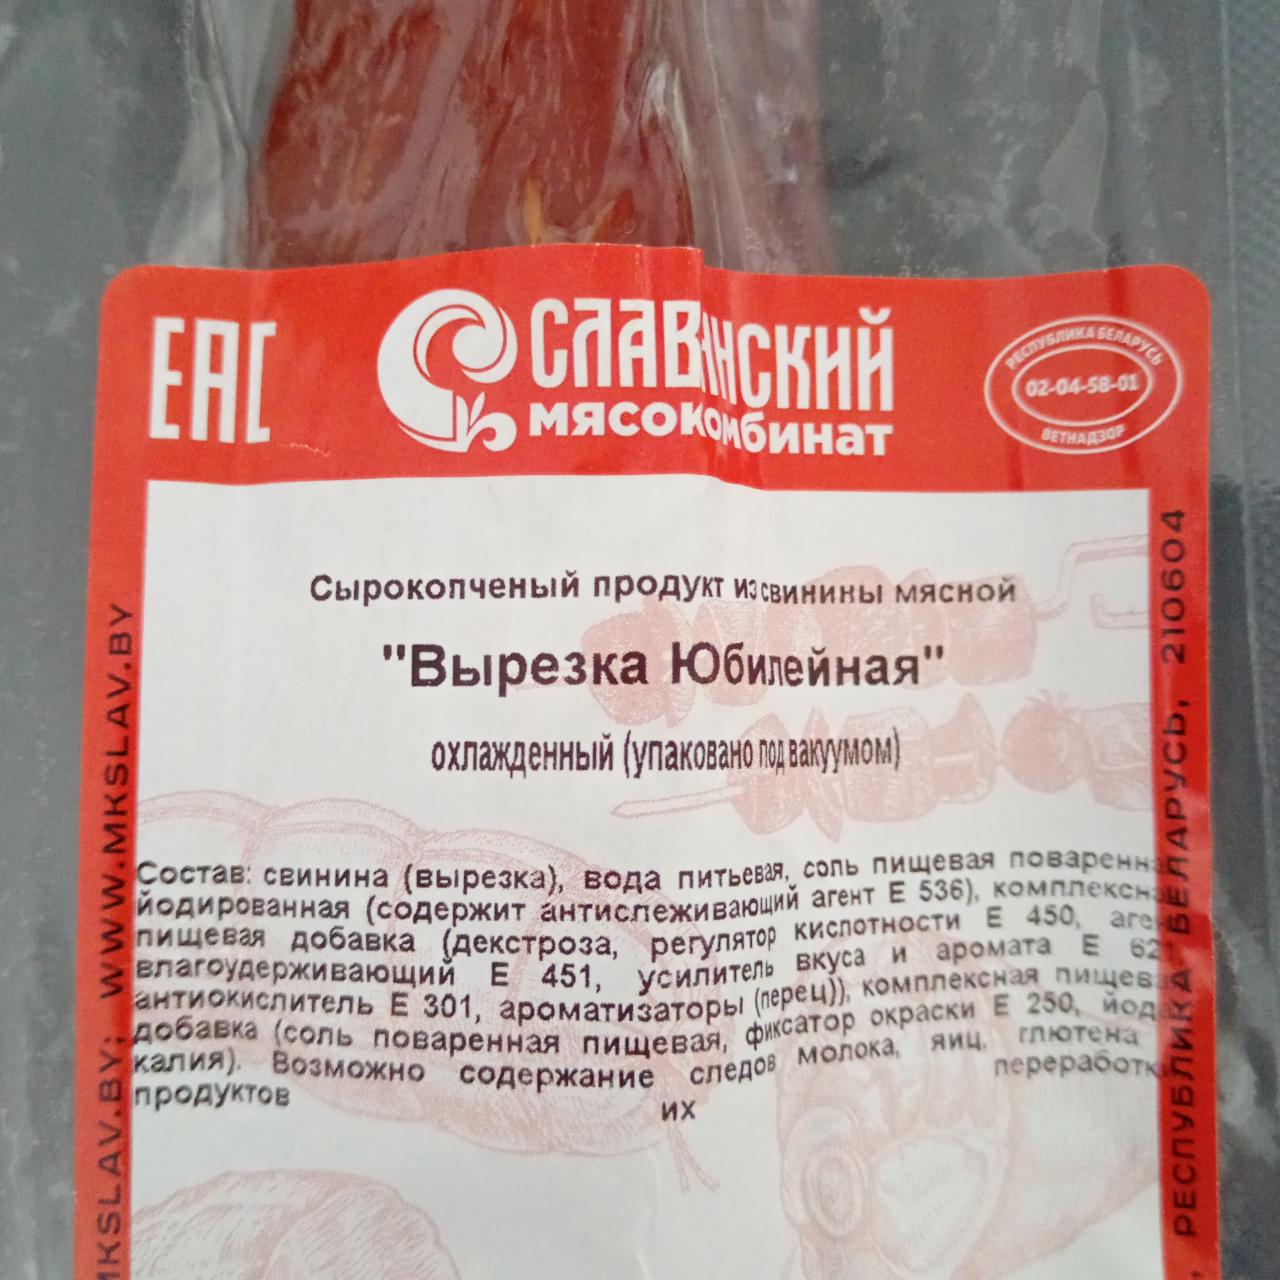 Фото - Вырезка Юбилейная сырокопченый продукт из свинины Славянский мясокомбинат